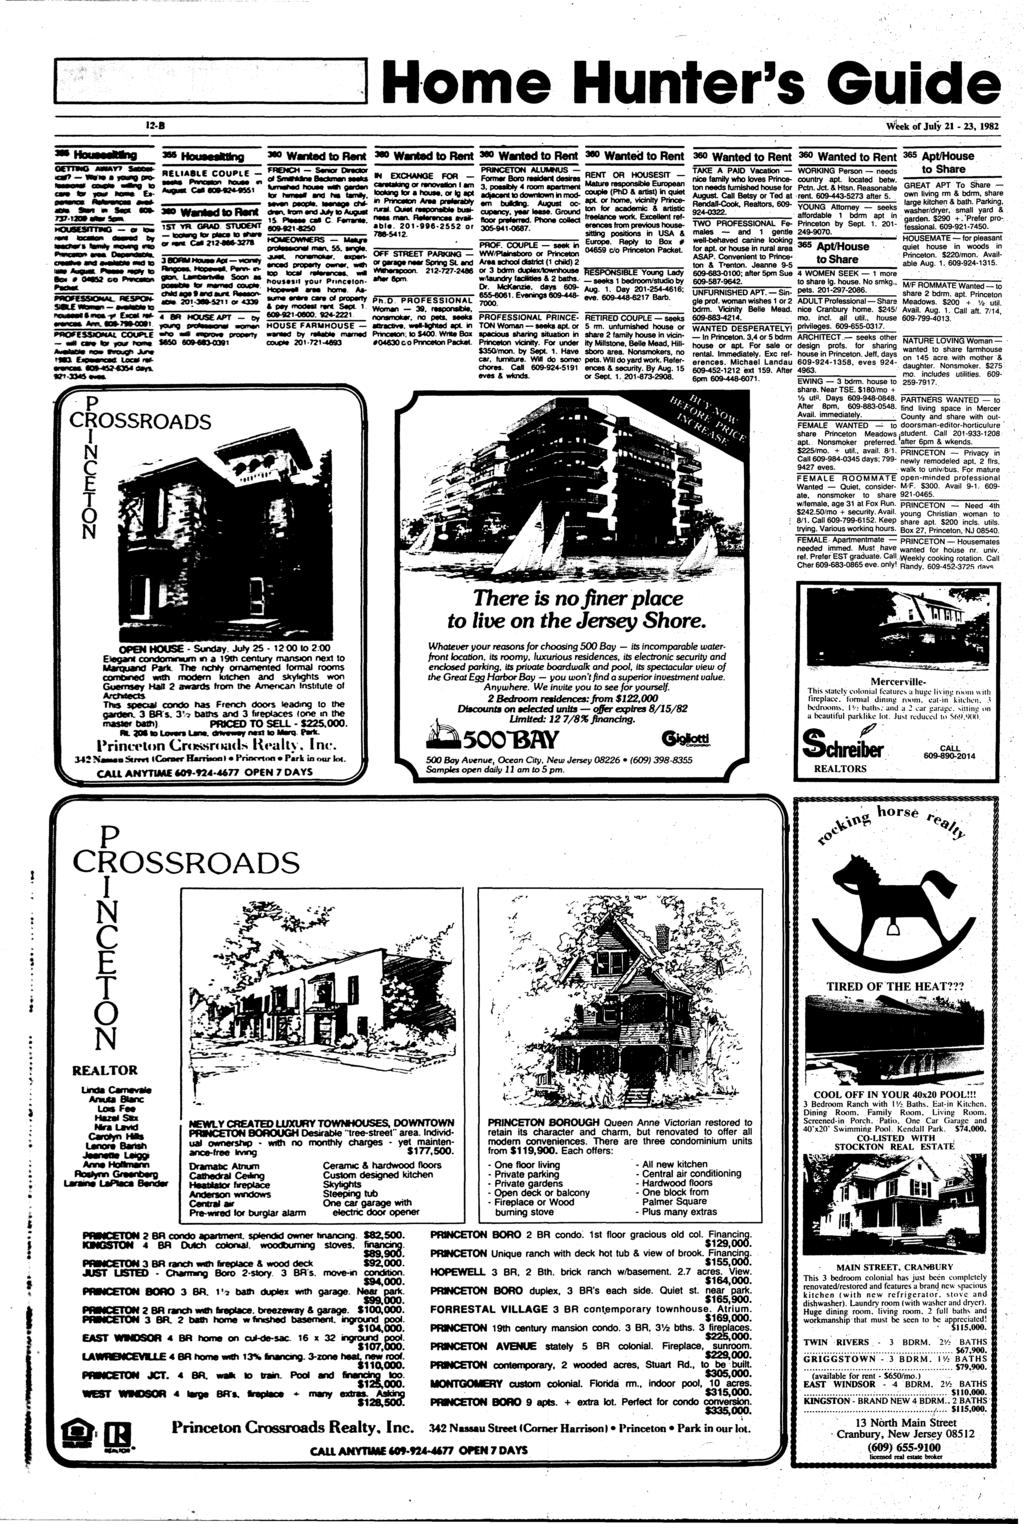 Home Hunter's Guide 12-B Wleekof July 21-23, 1982 GETTING mmm car?